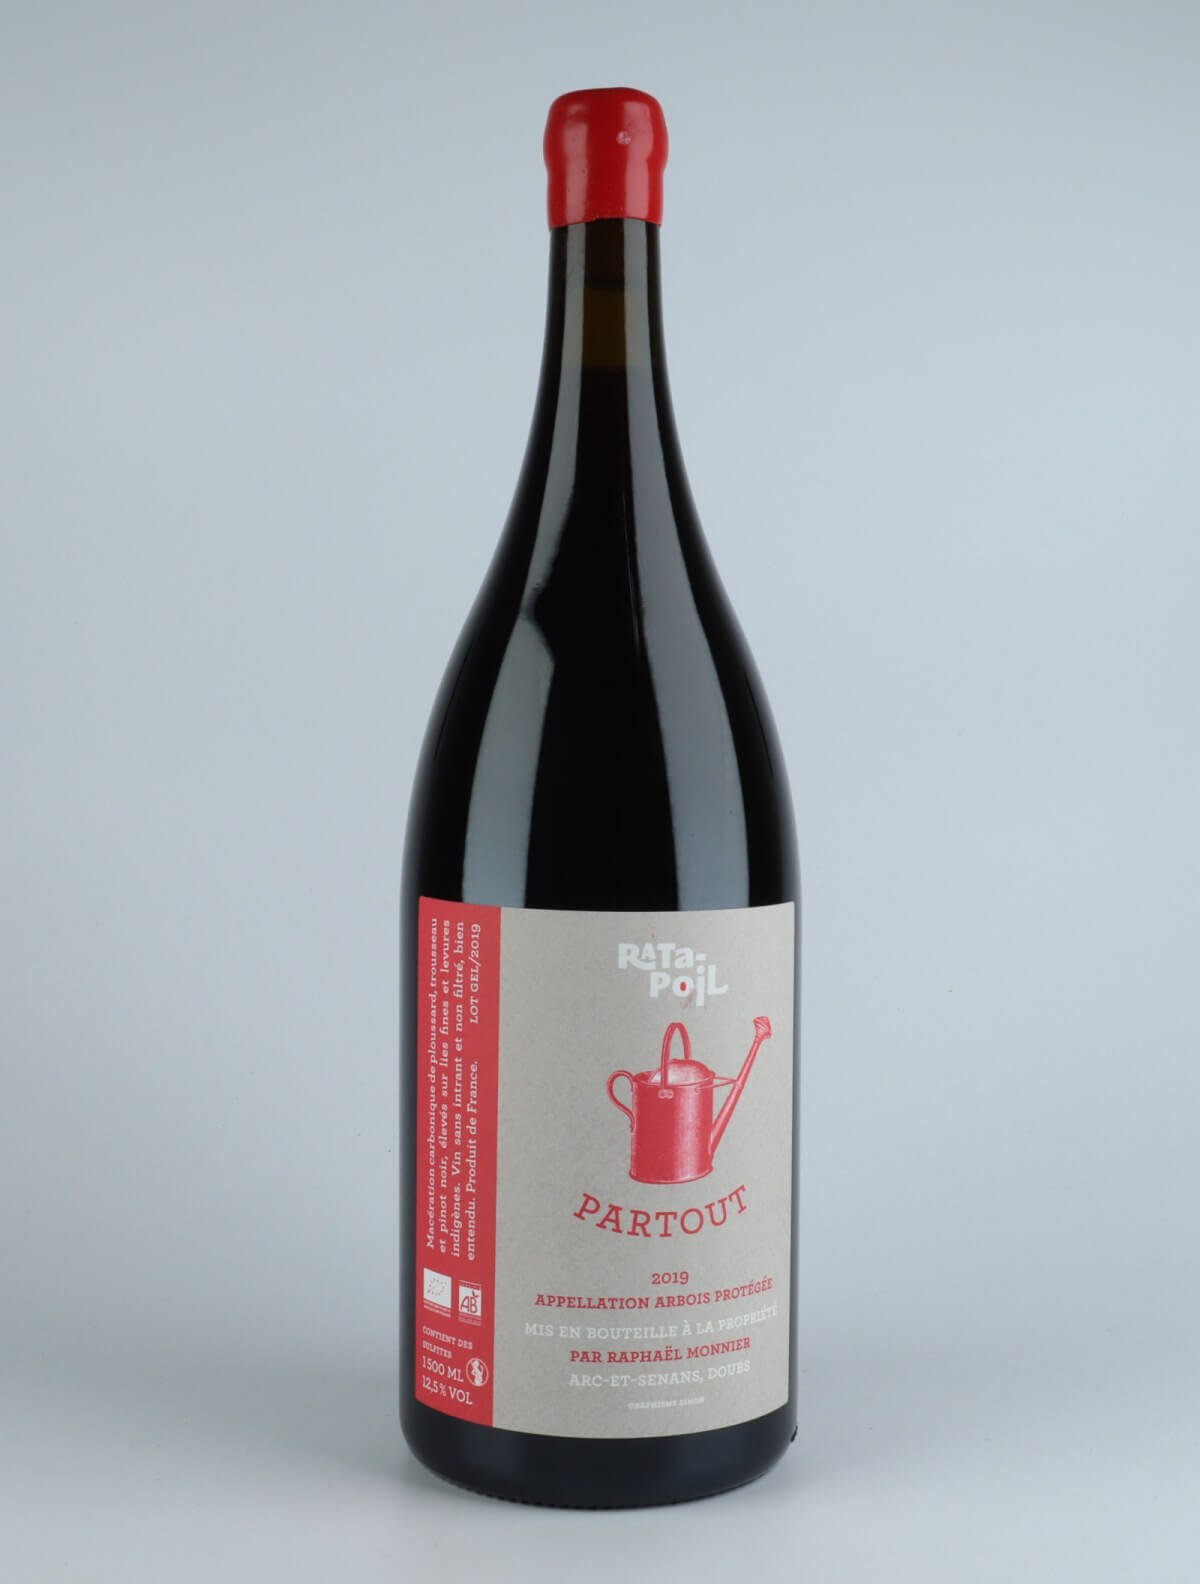 En flaske 2019 Partout Rødvin fra Domaine Ratapoil, Jura i Frankrig